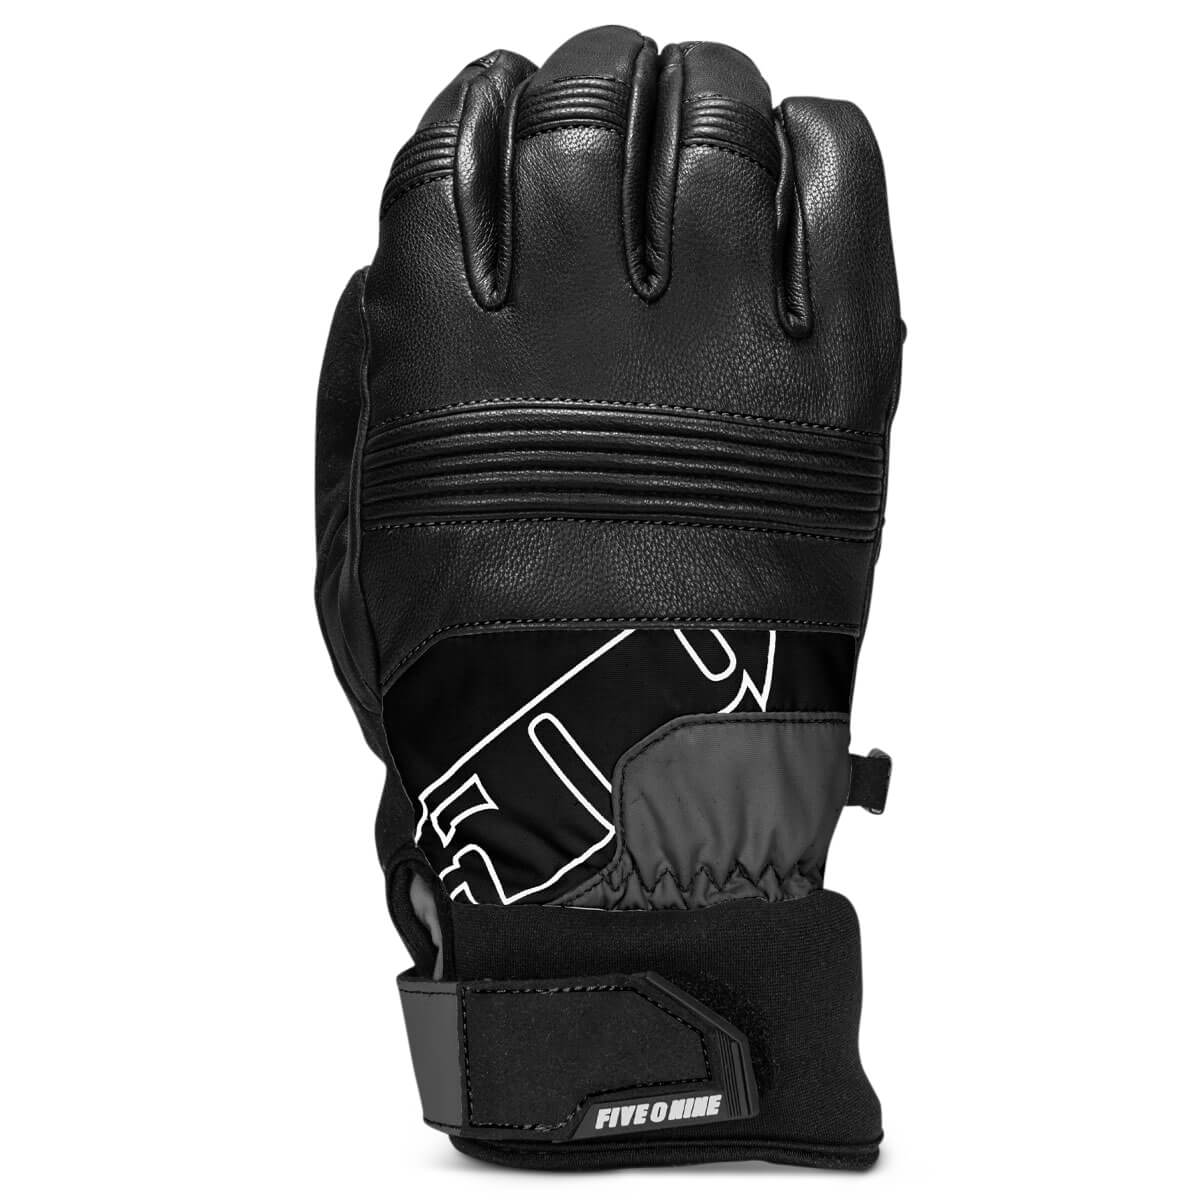 Free Range Gloves - Black Ops / XS